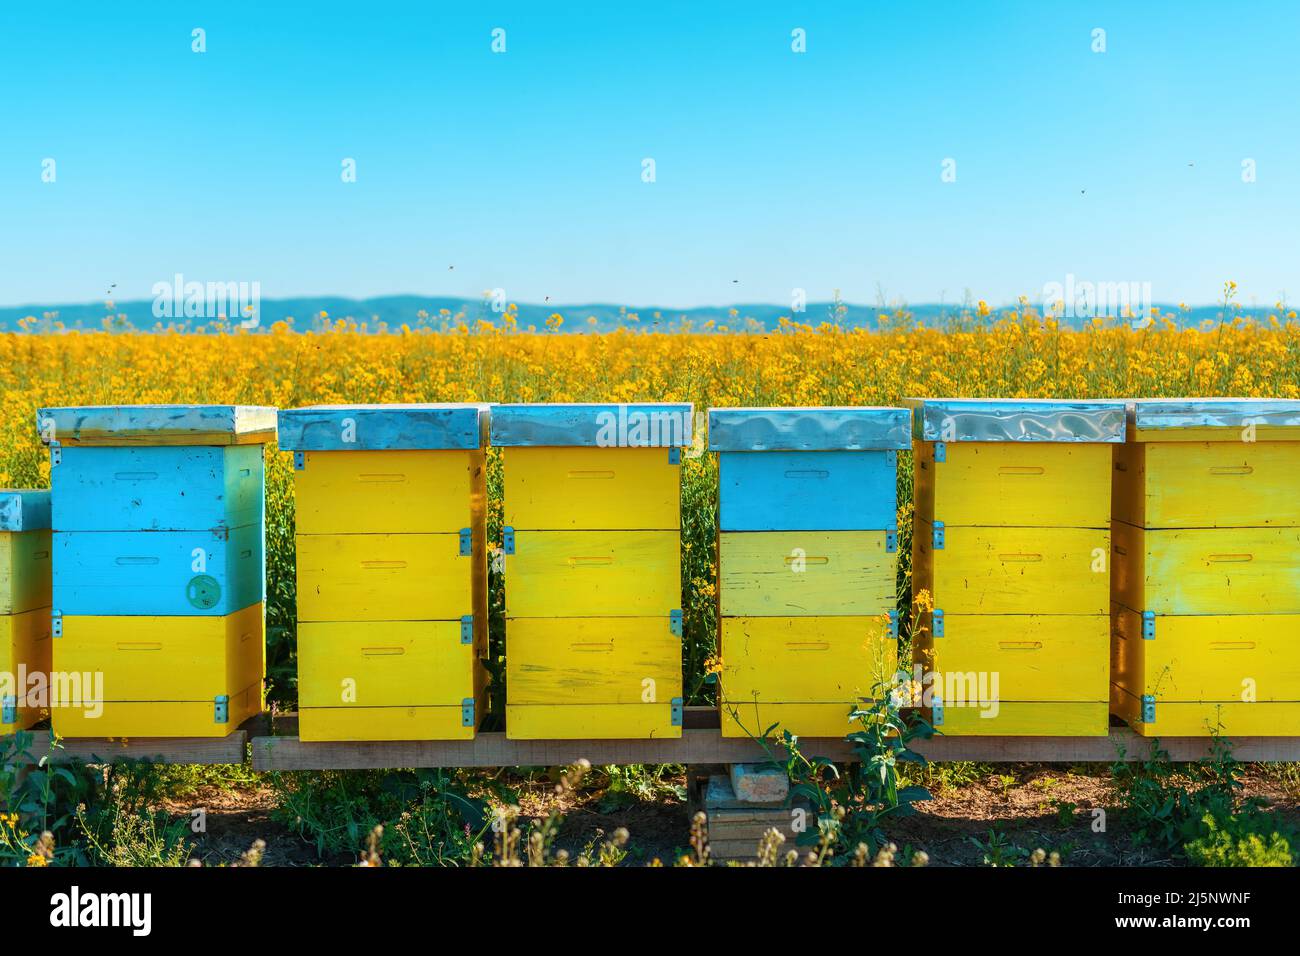 Bienenstockboxen im blühenden Rapsfeld, Honigbienen, die Bestäubung auf Rapsplantagen durchführen, selektiver Fokus Stockfoto